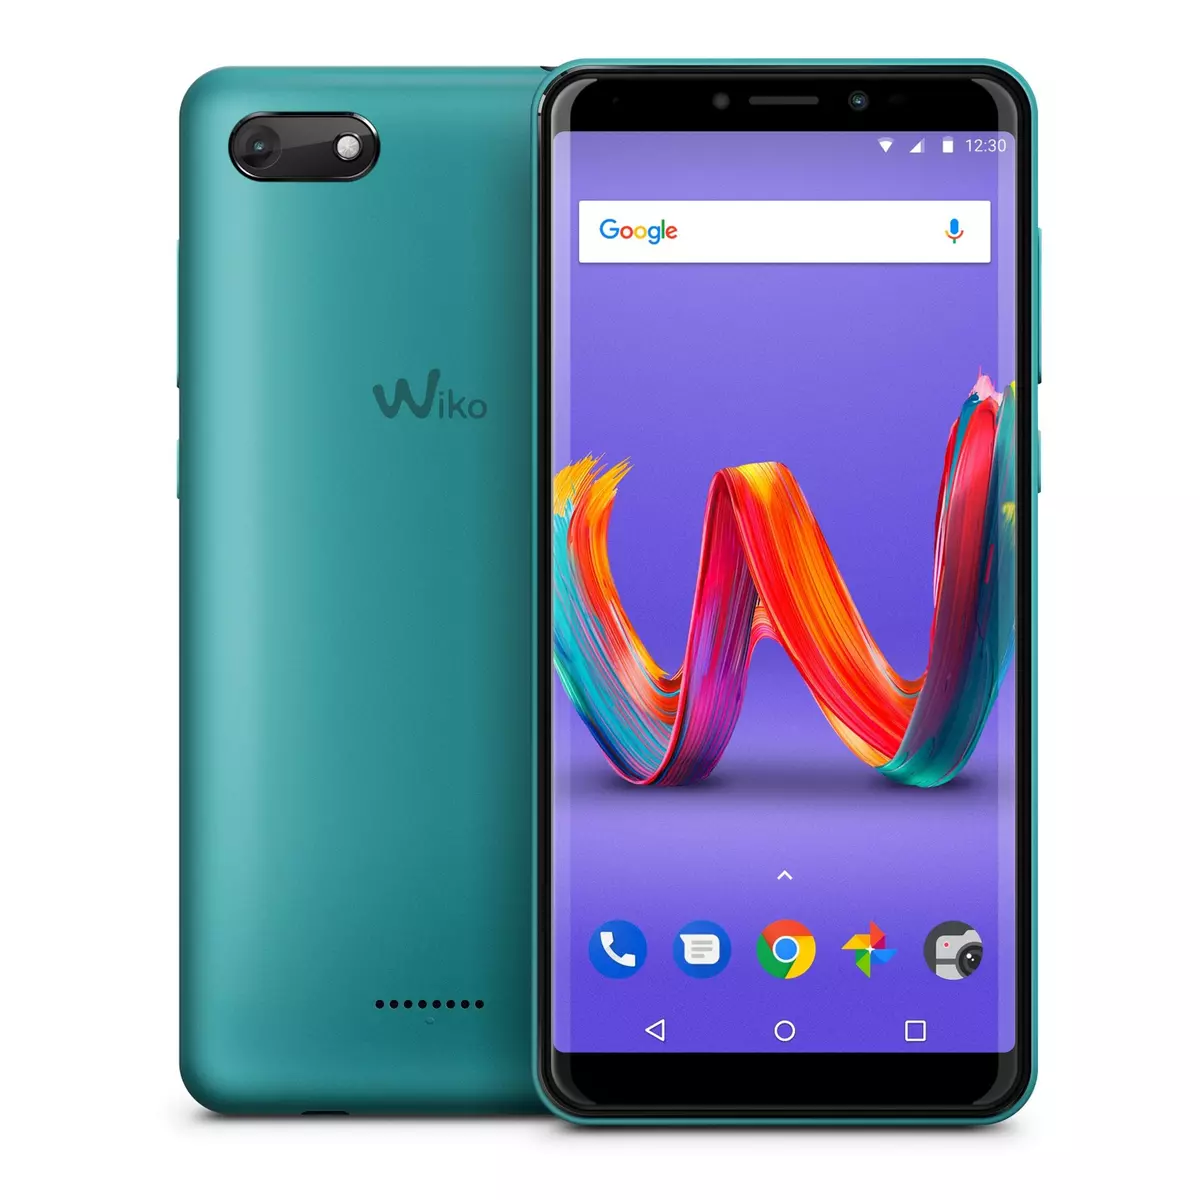 WIKO Smartphone - HARRY 2 - 16 Go - Ecran 5.45 pouces - Vert - Double SIM - 4G